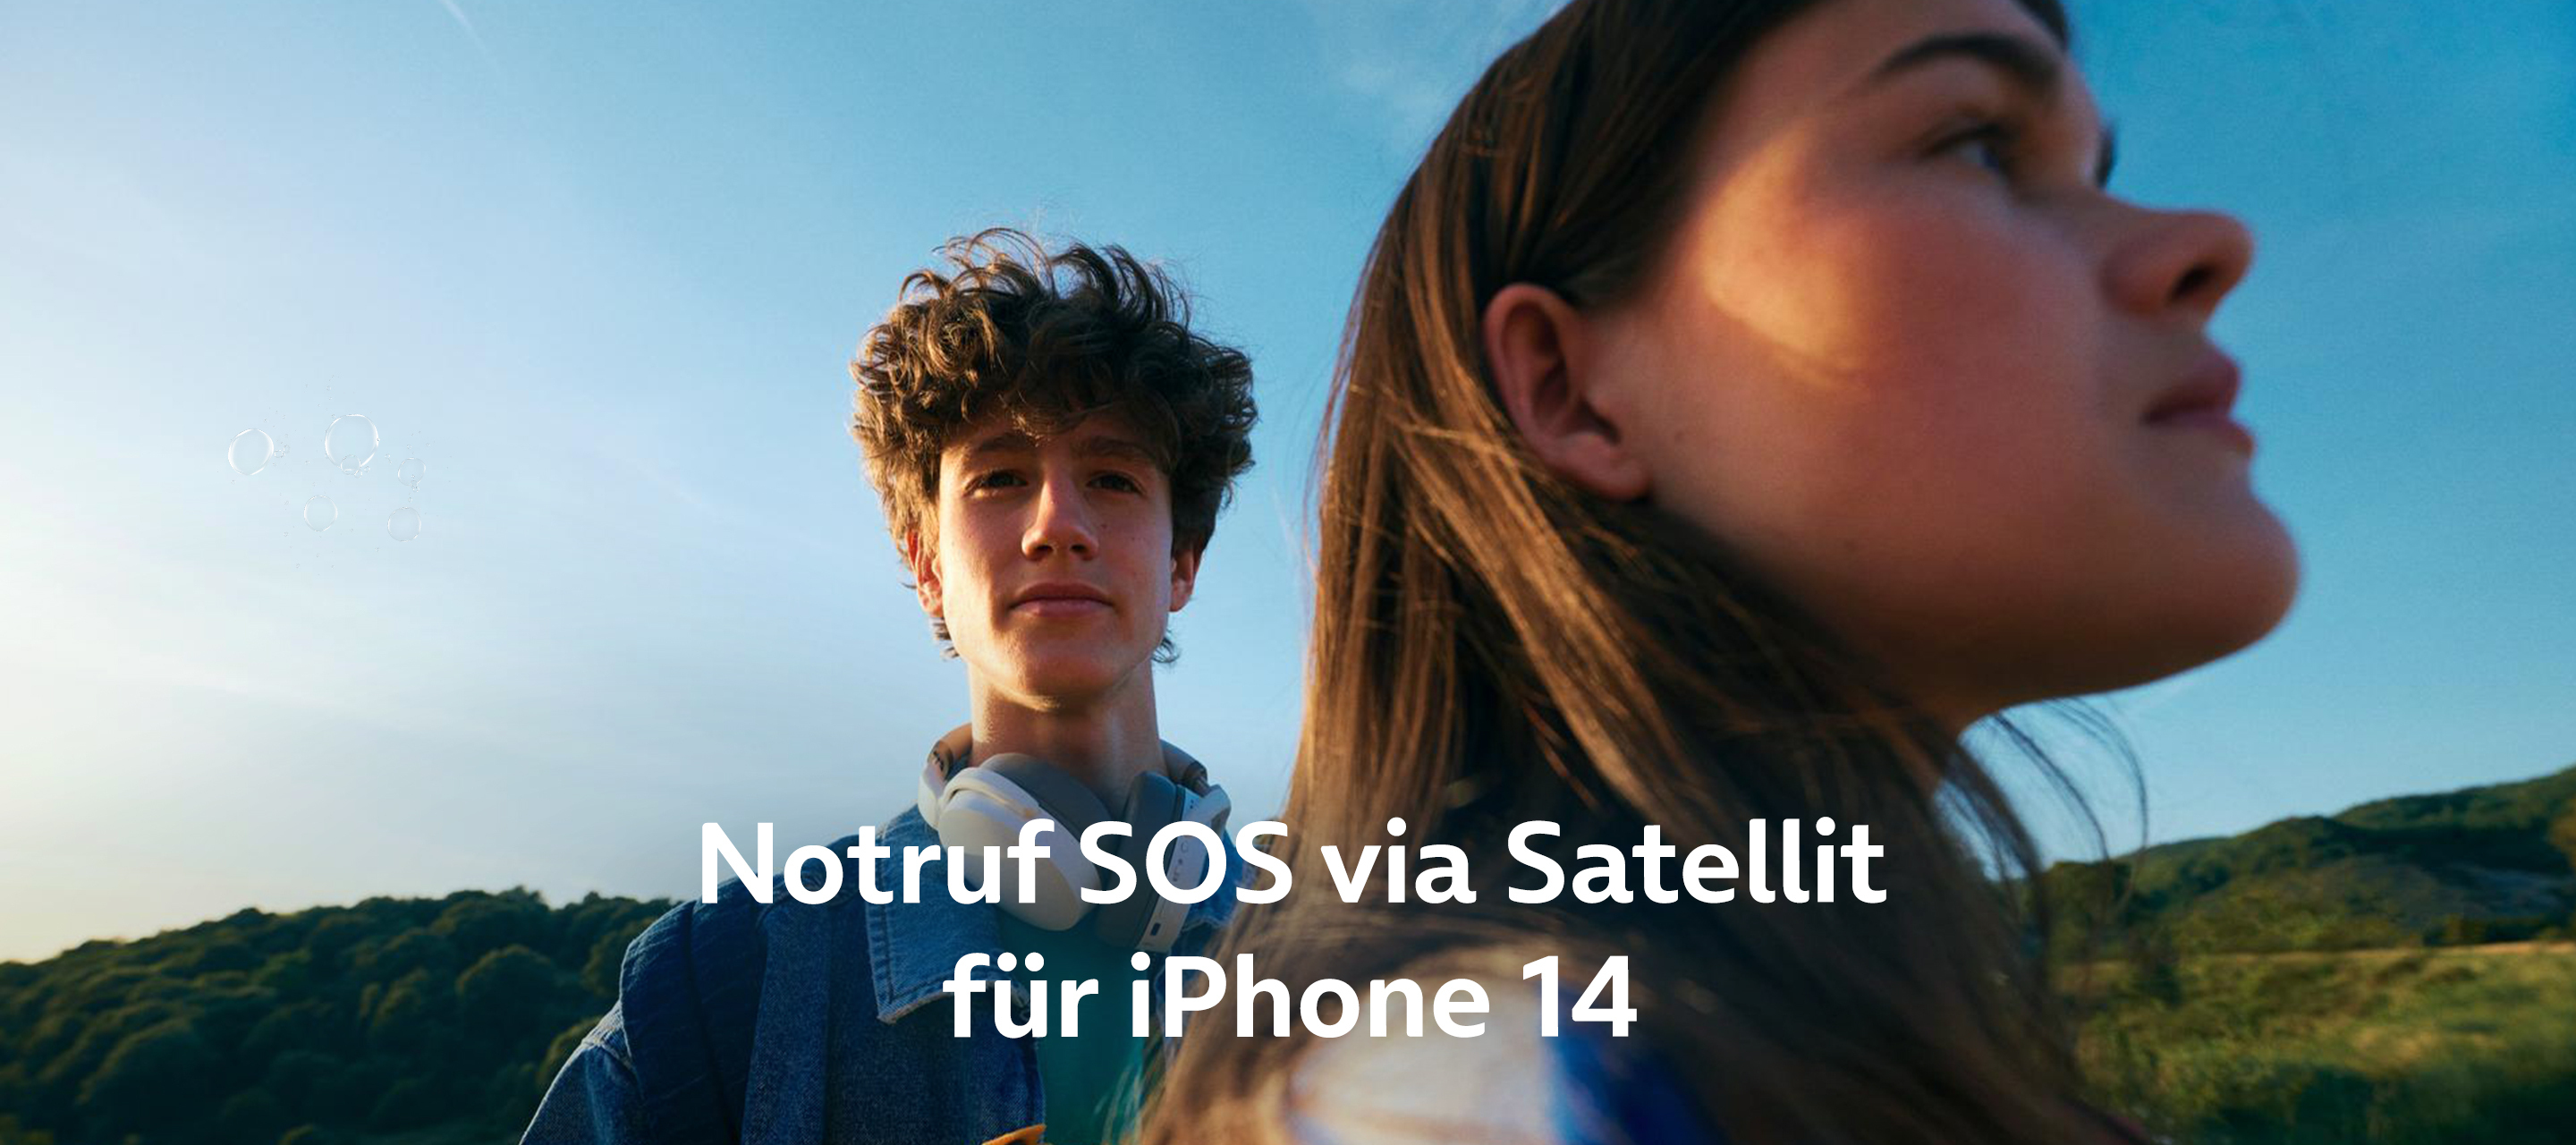 iPhone 14 - SOS Notruf via Satellit nun auch in Deutschland möglich